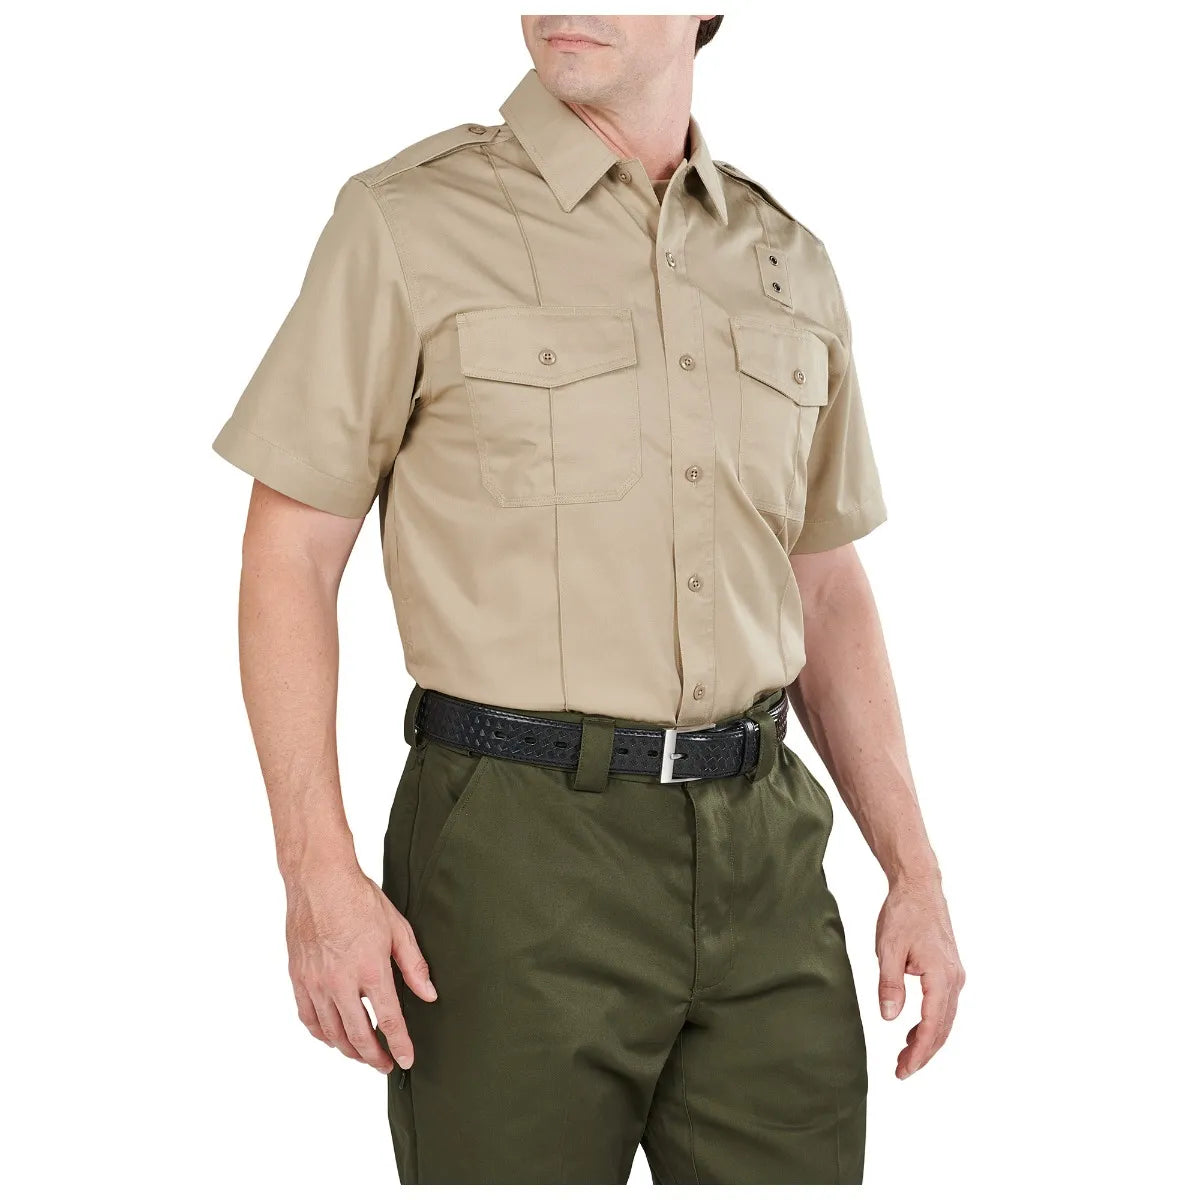 5.11 Tactical TWILL PDU Class A Short Sleeve Shirt